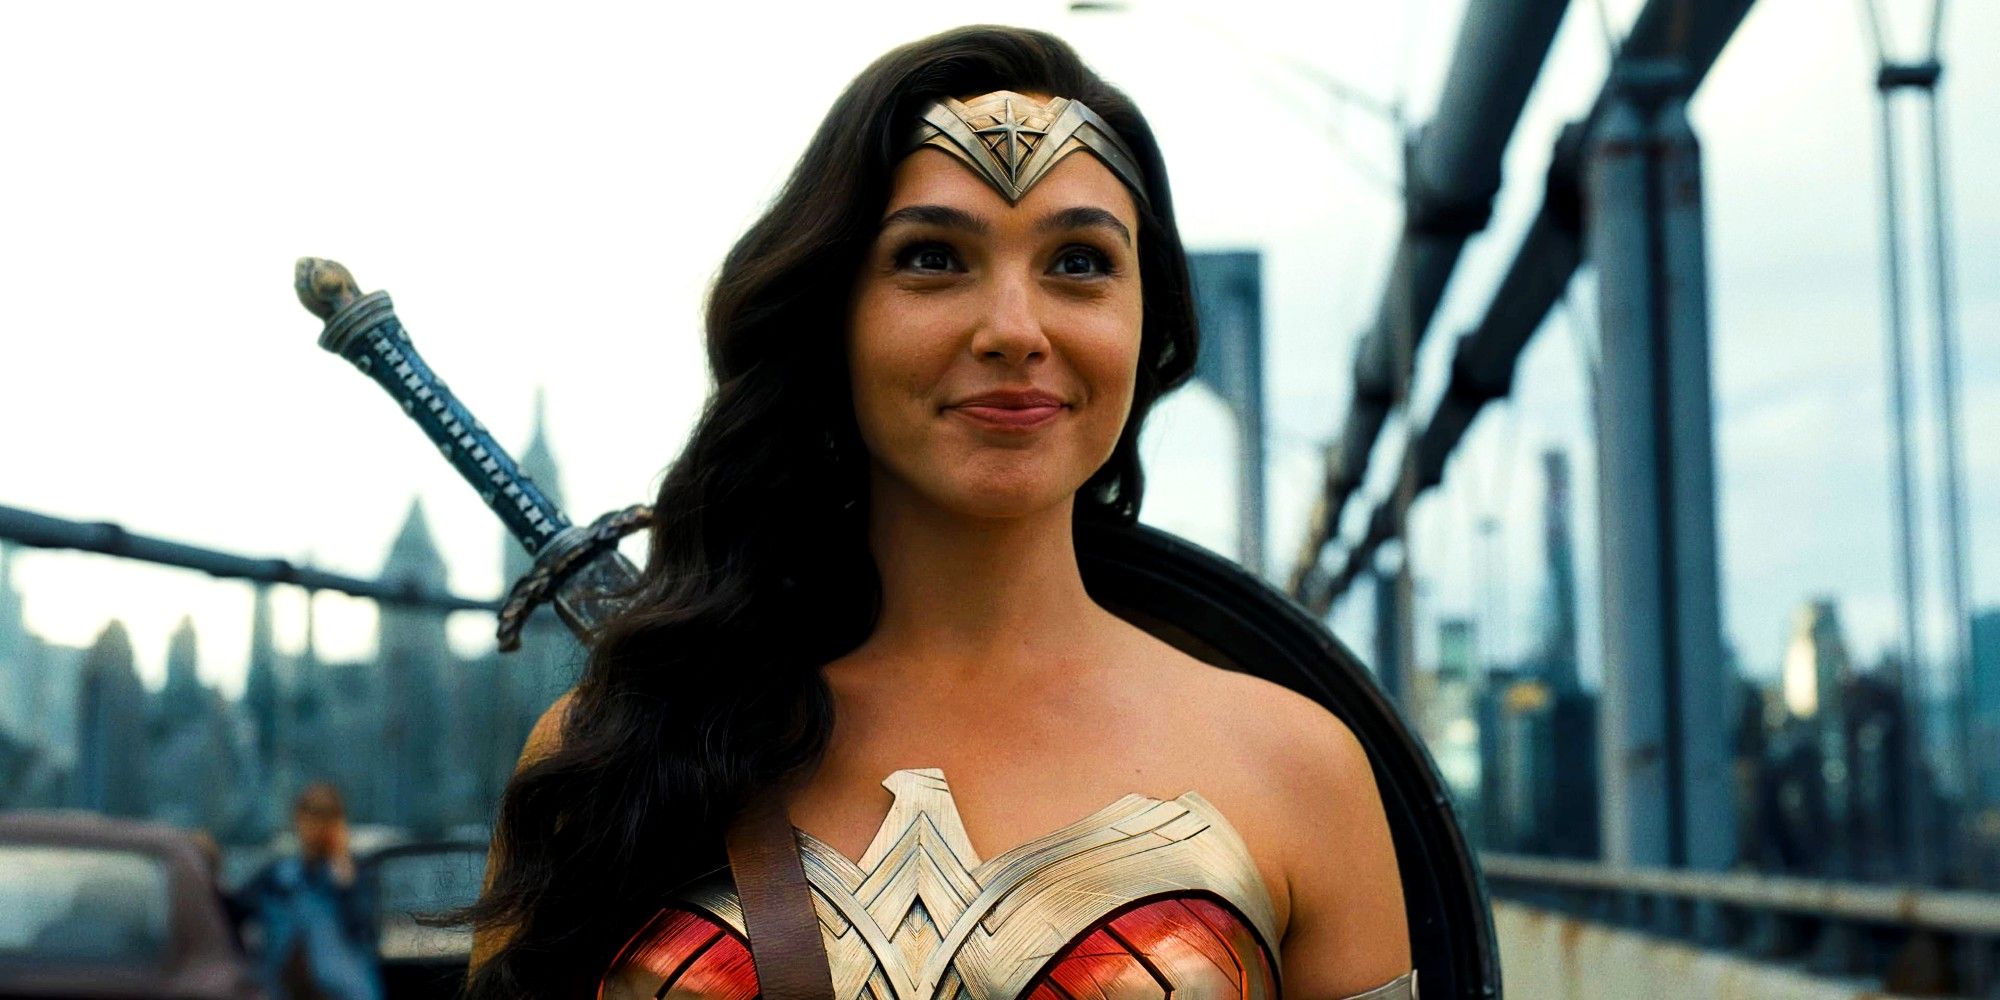 "Esta imagen es la indicada": Los rumores sobre el casting de Wonder Woman de DCU surgen después de la misteriosa publicación de James Gunn